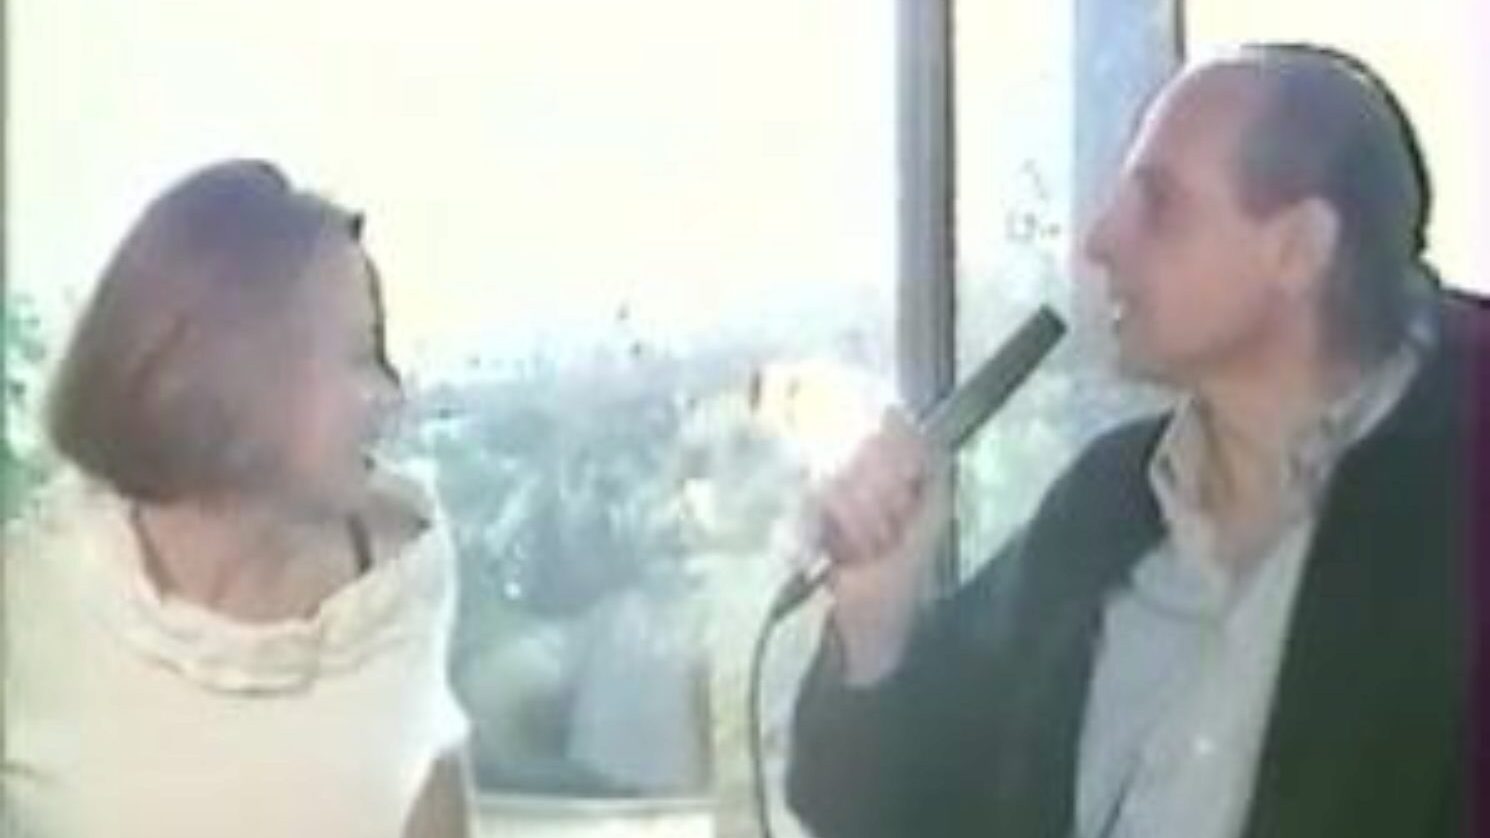 marnie s'offre: vídeo pornô europeu gratuito b5 - xhamster assista o episódio de marnie s'offre tube bang-out para todos no xhamster, com a coleção autorizada de vinhetas de filmes de pornografia francesa europeia, agente e orgia